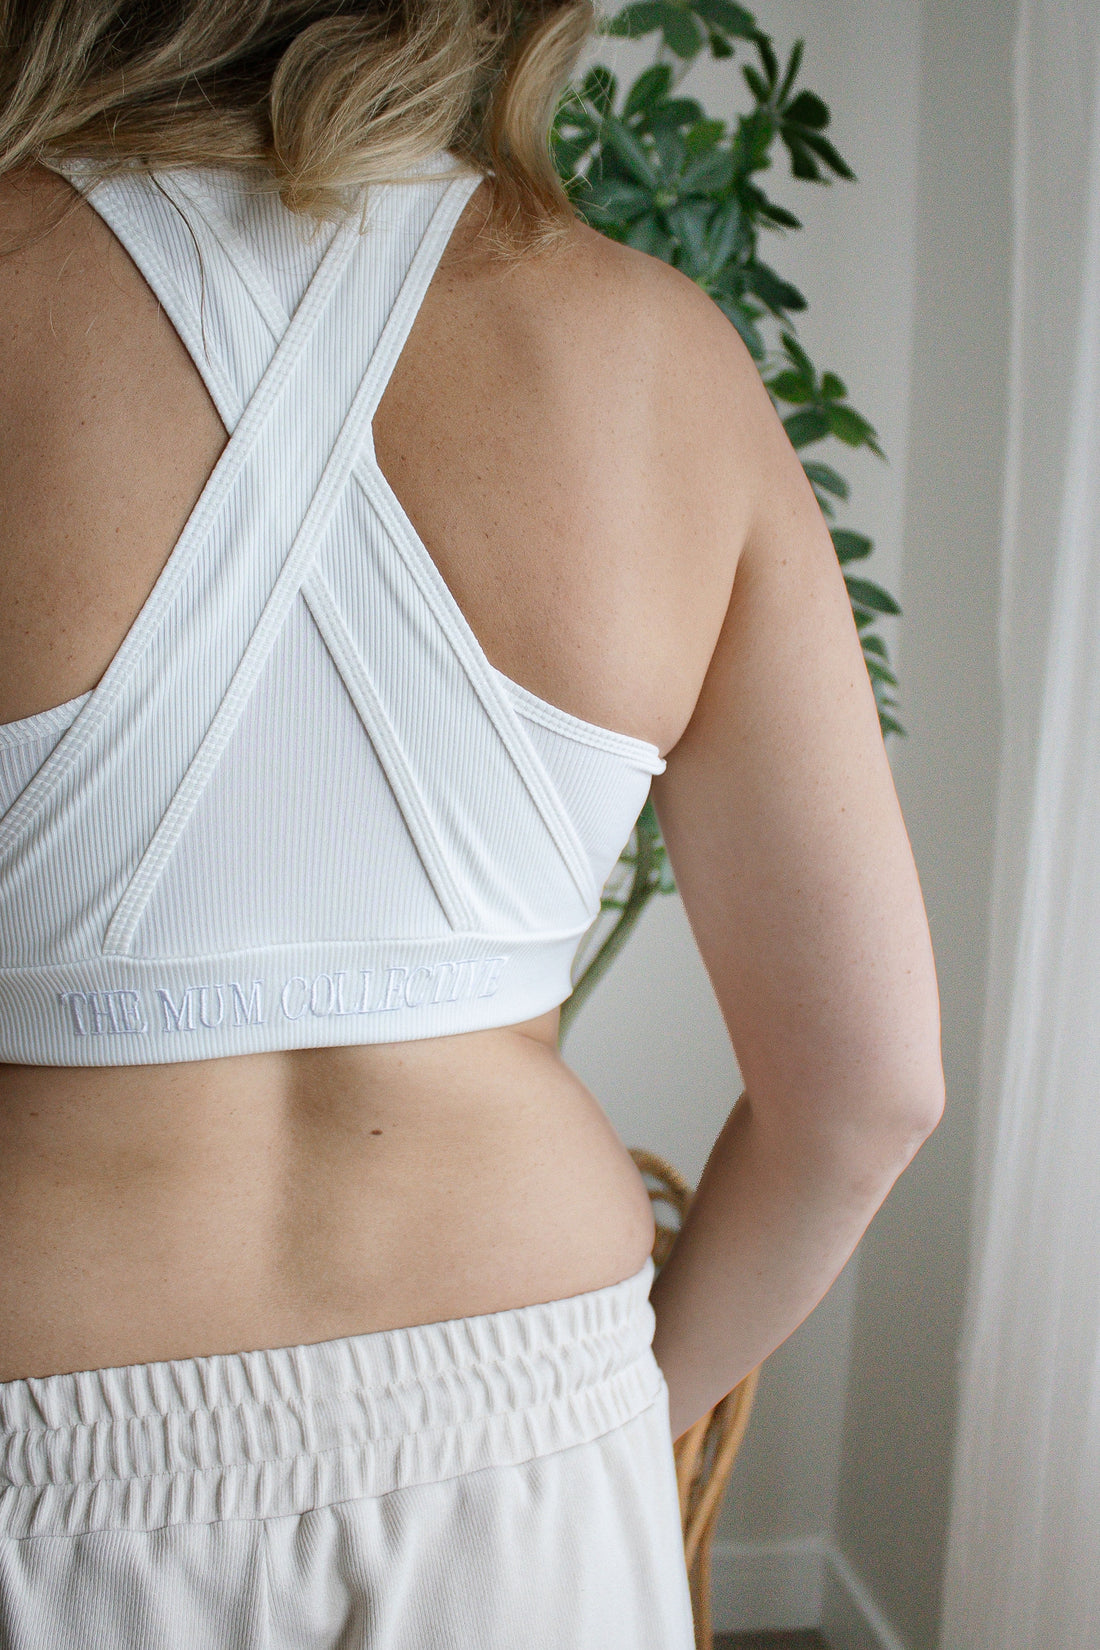 La Isla - 【Nursing bra】This Gratlin nursing bra is designed for